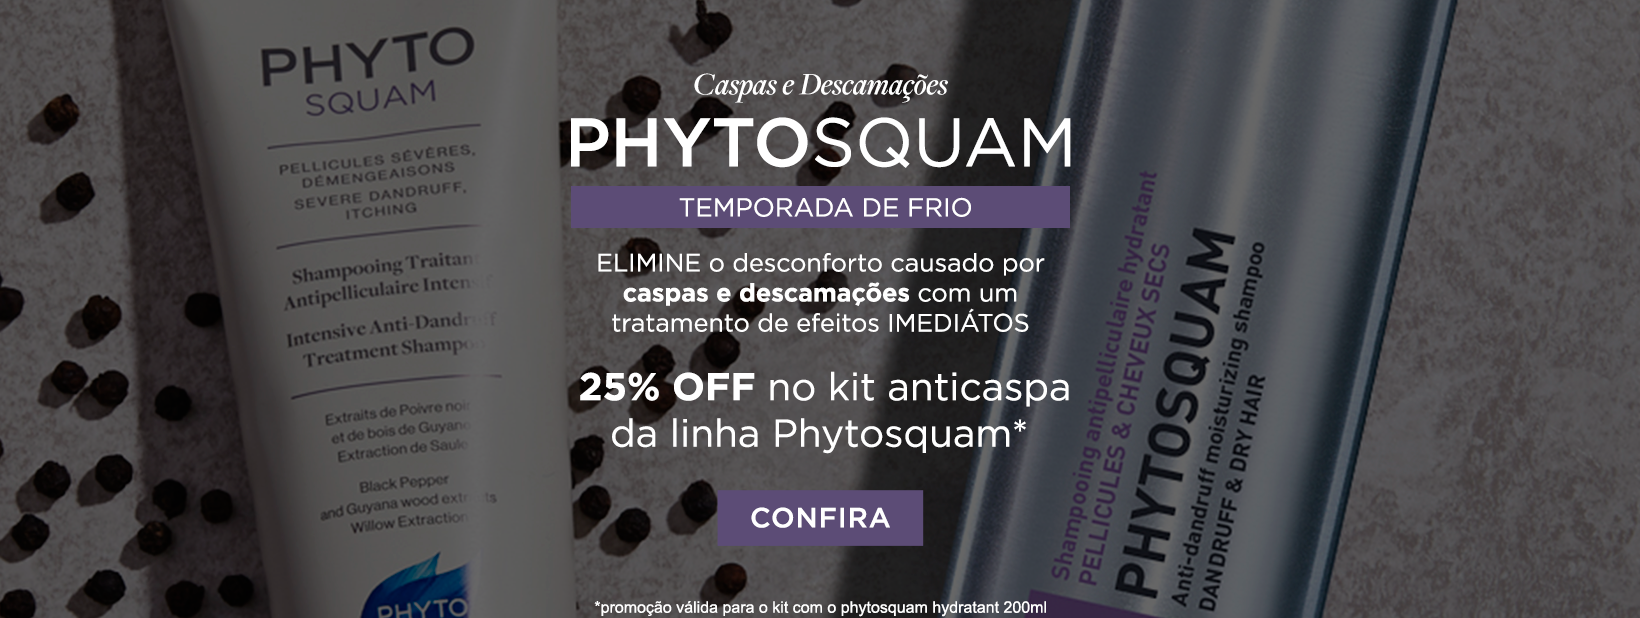 Phytosquam